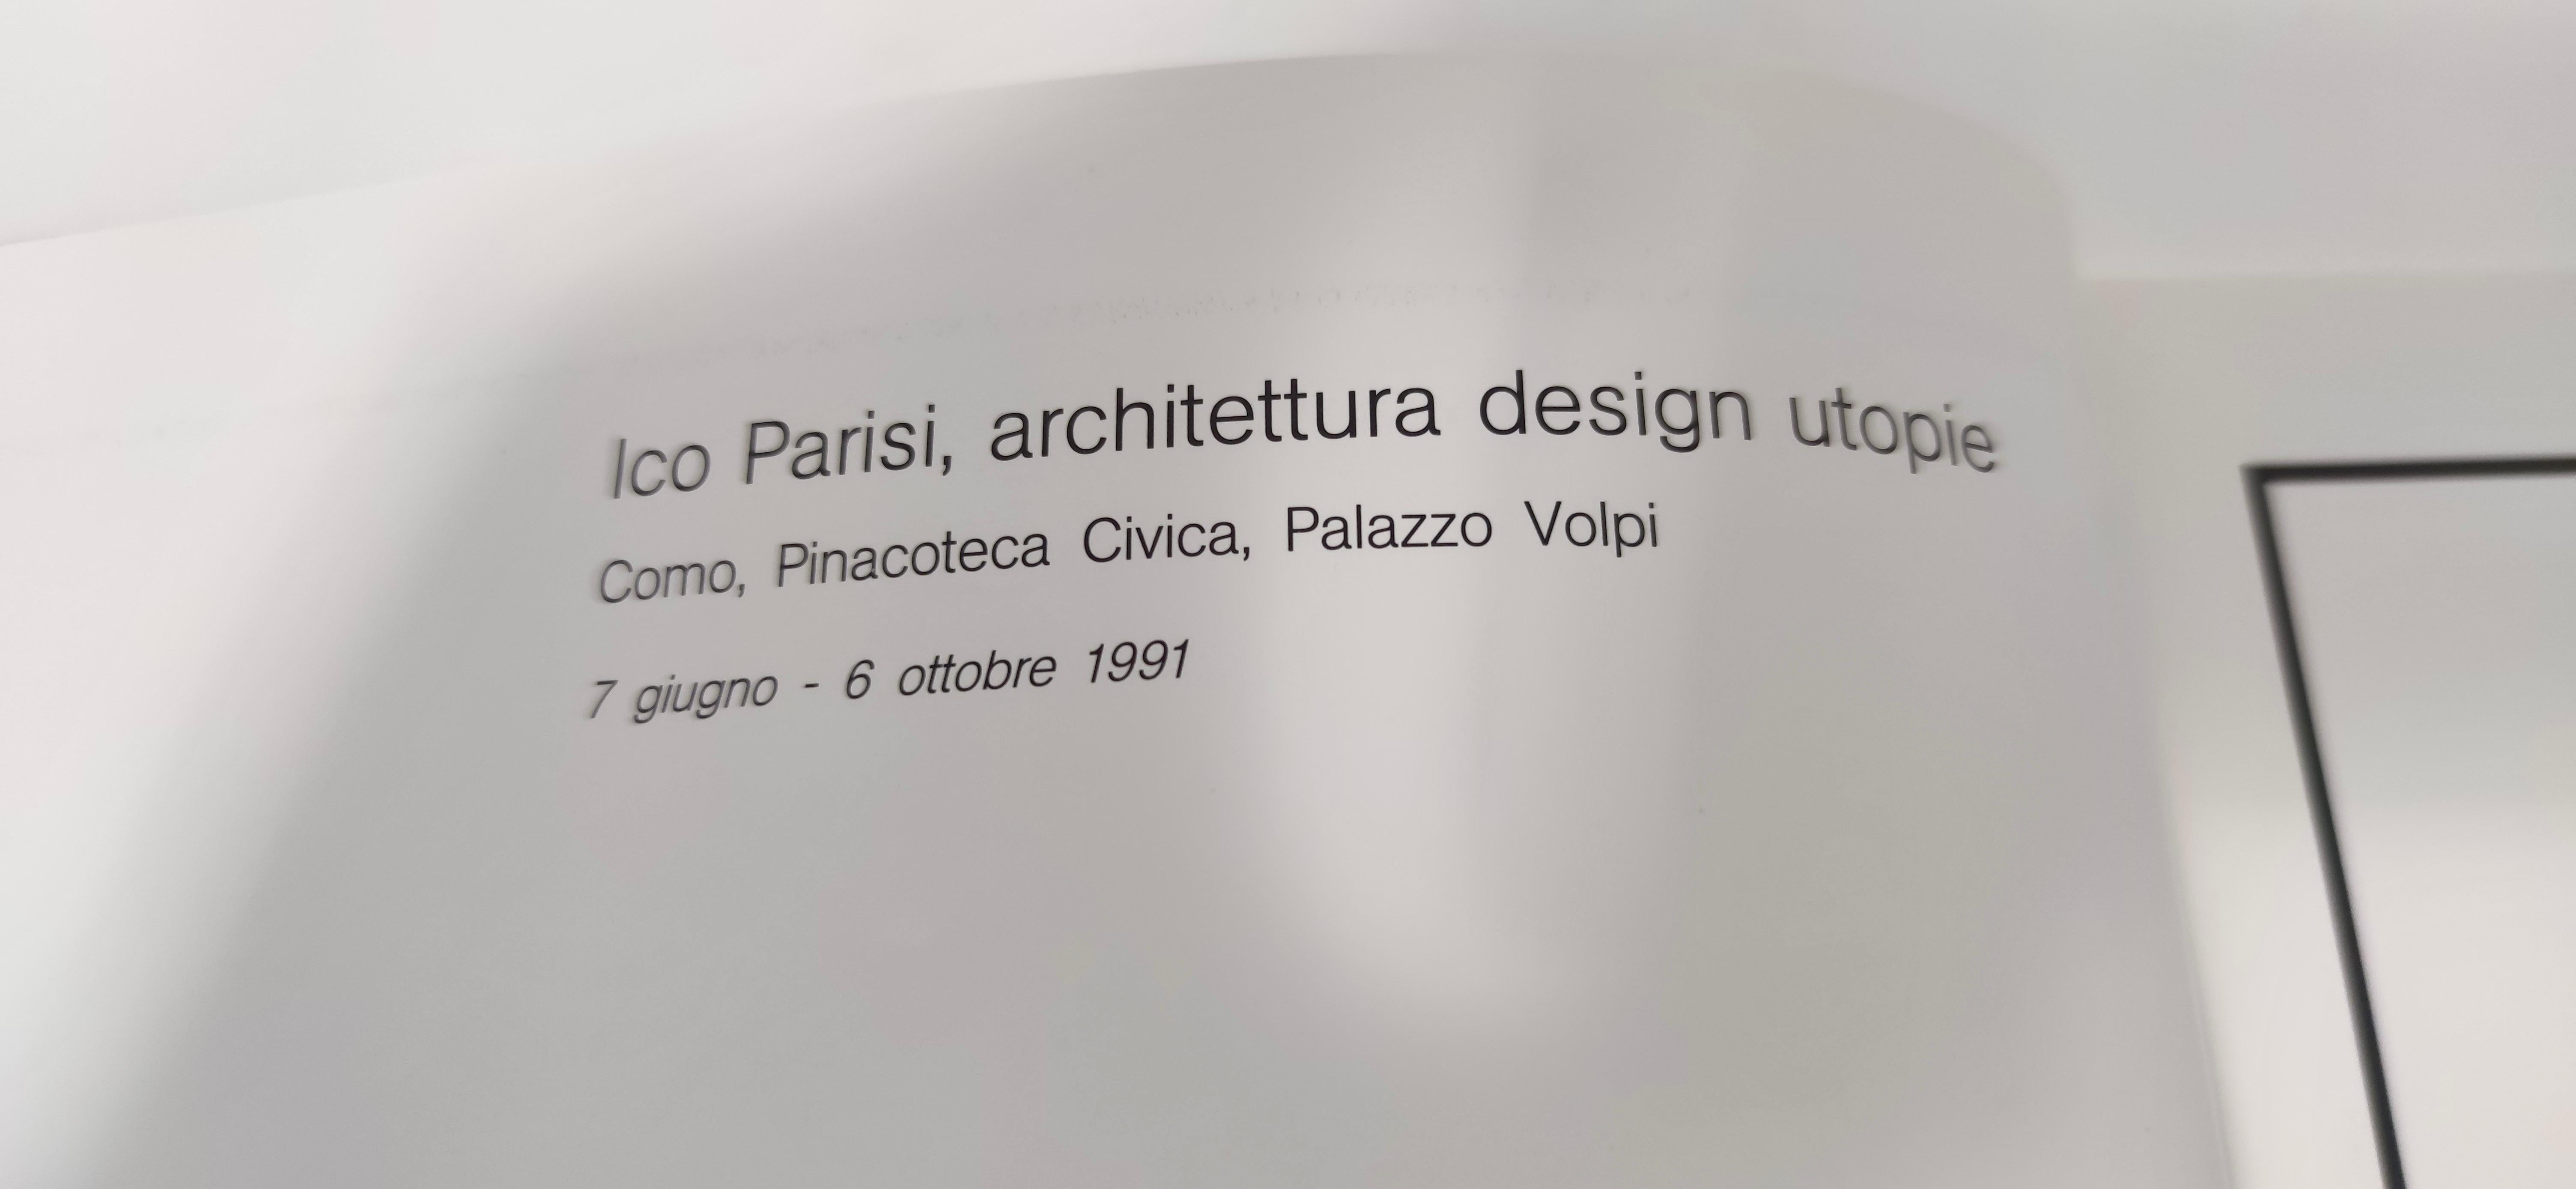 ISBN: 88.7269.004.8
Dieses seltene Buch über Ico Parisi von Luigi Cavadini und Flaminio Gualdoni hat 86 Seiten mit etwa 150 Abbildungen. 
Es wird von FIdia Edizioni d'Arte herausgegeben und von Grafiche Salin, Olgiate Comasco (CO) - Italien am 31.